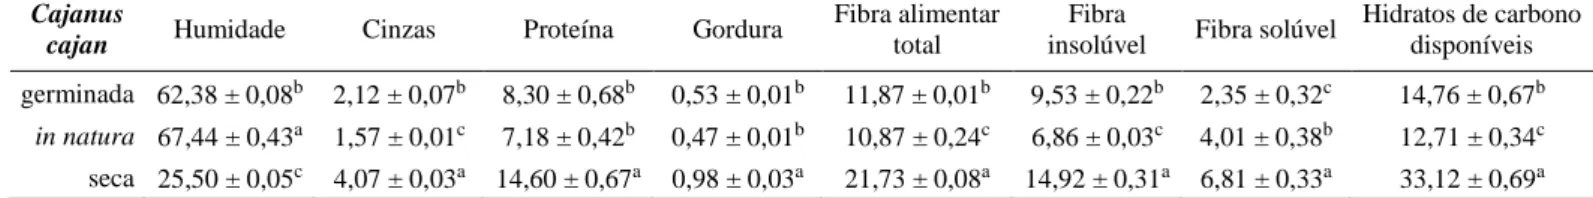 Tabela 7. Composição nutricional das sementes da espécie Cajanus cajan em diferentes  estados (média ± desvio-padrão; g/ 100 g de peso fresco)